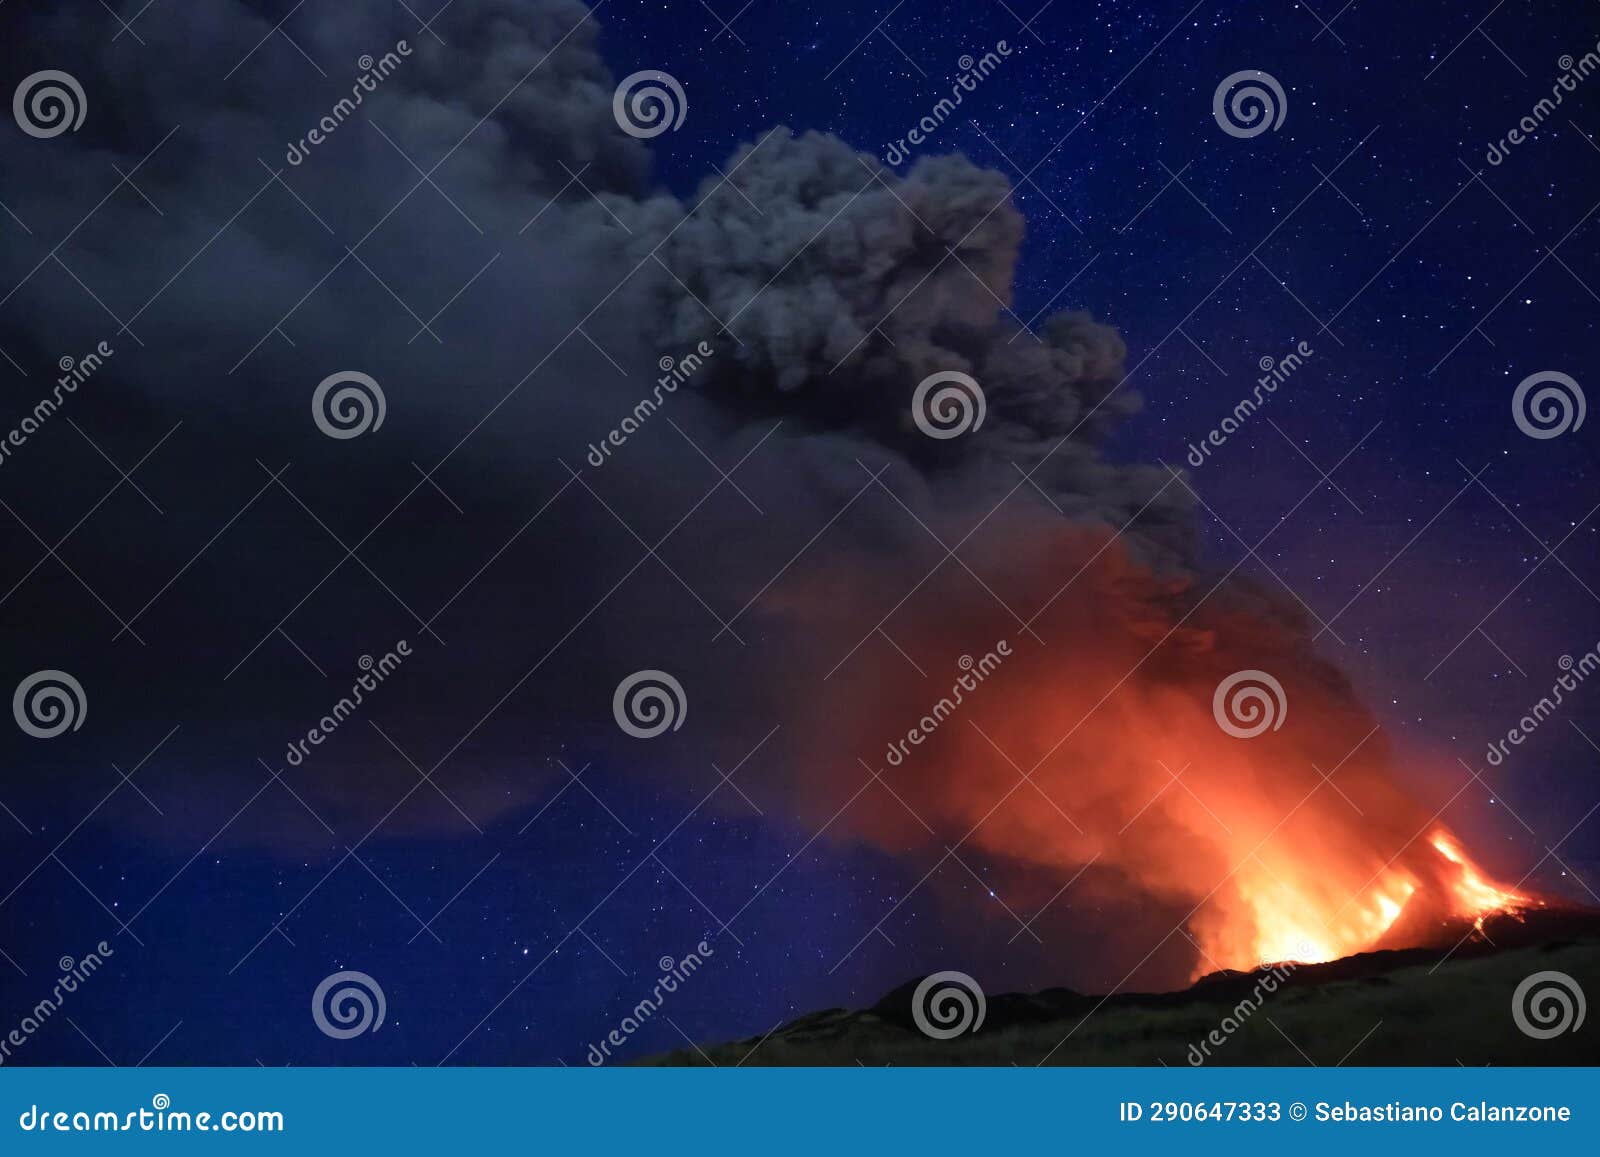 l'etna in sicilia grande eruzione con grandi emissioni di cenere dal cratere del vulcano nel ciel notturno stellato